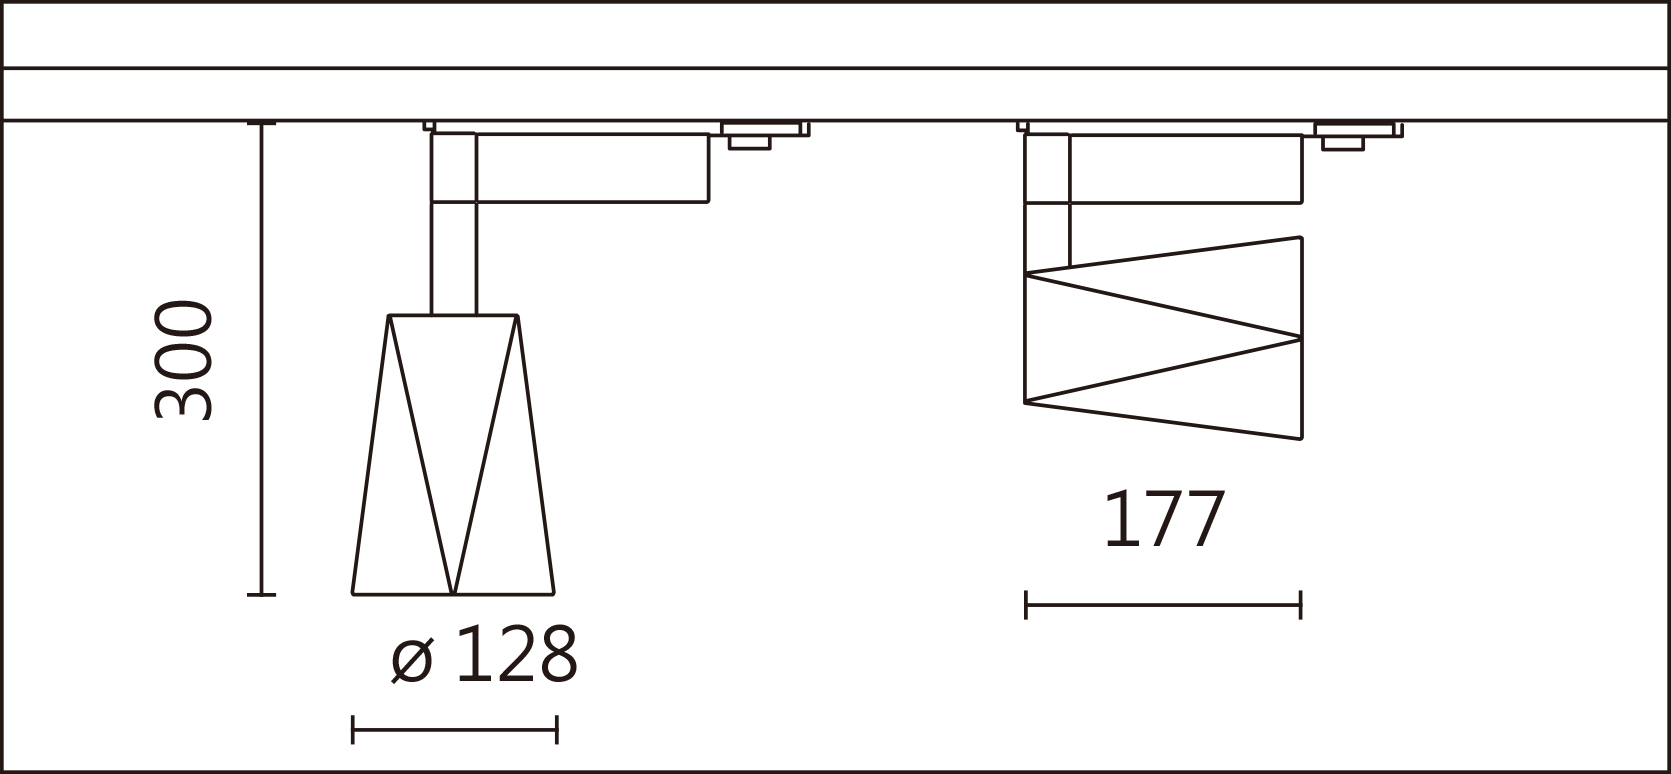 SA-9200A Dimensional drawing.jpg